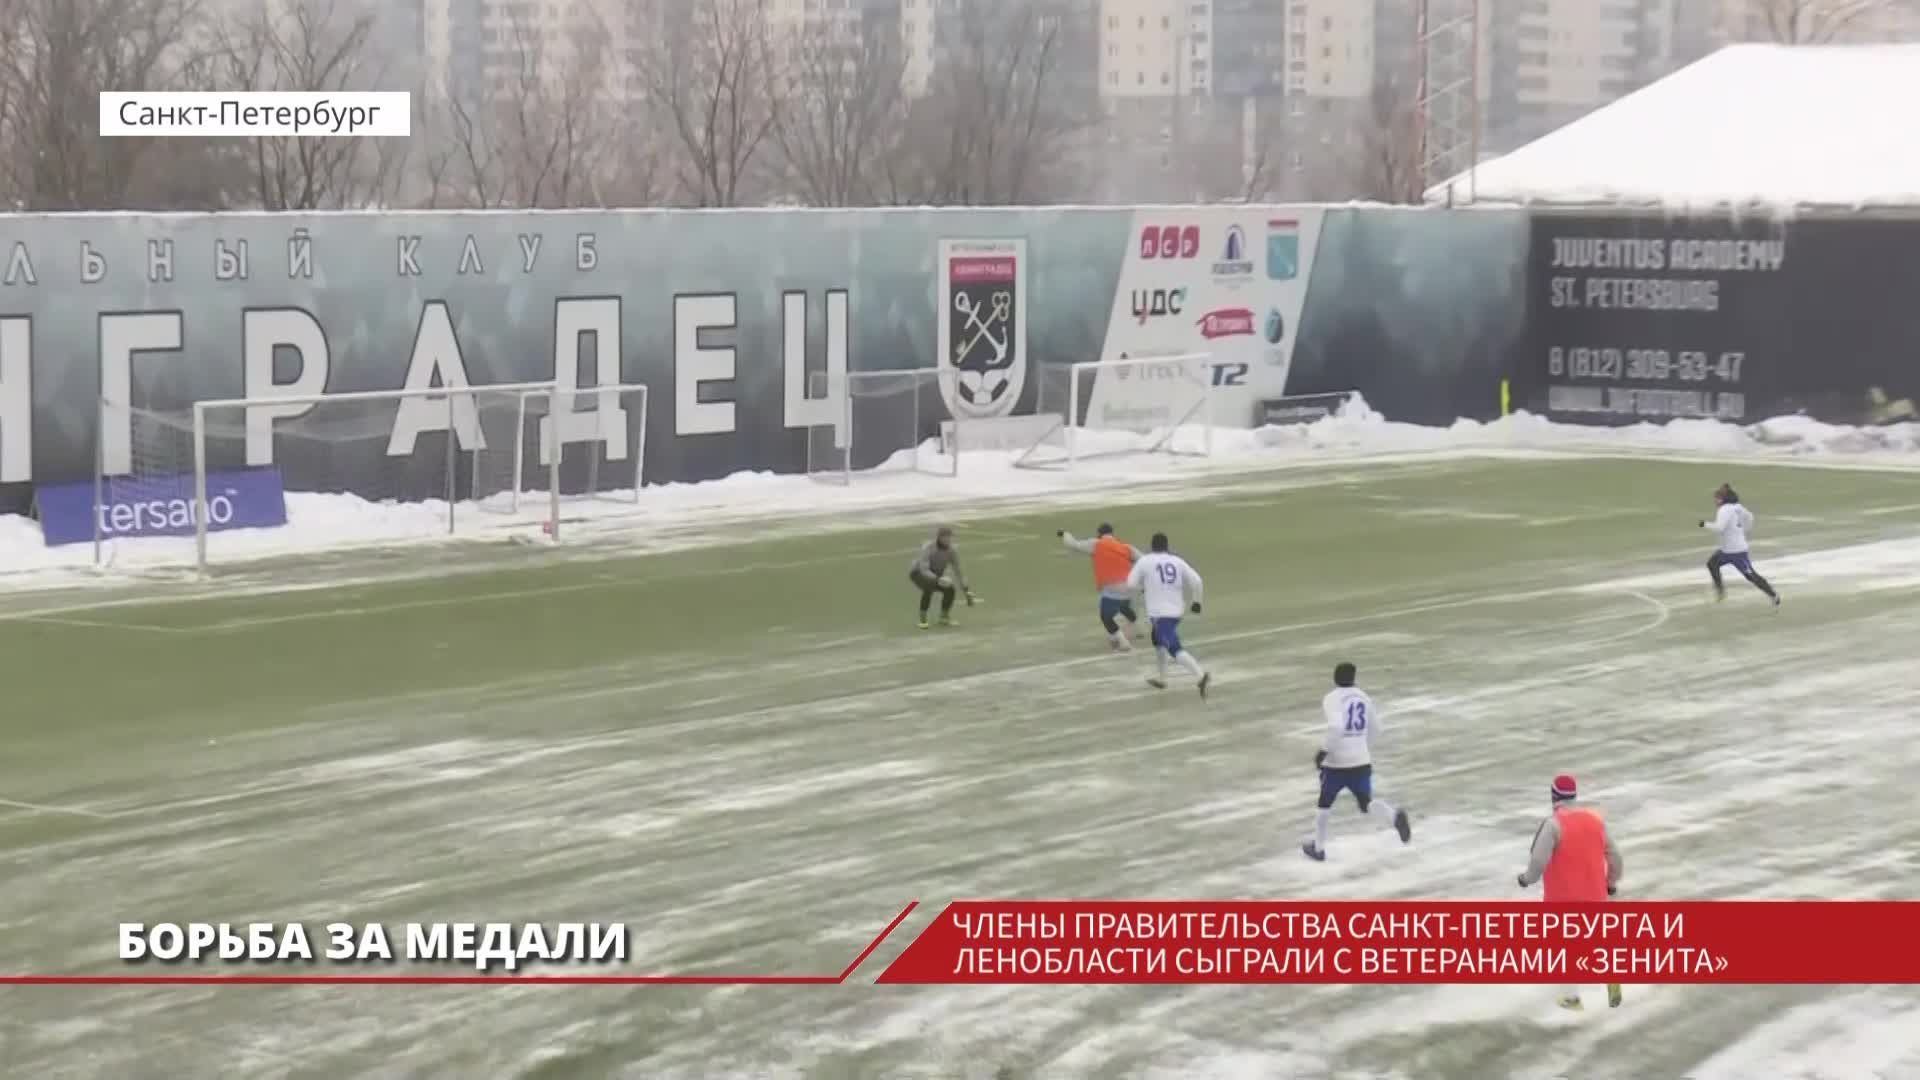 Санкт-Петербург и Ленинградская область сыграли в футбол с ветеранами "Зенита"